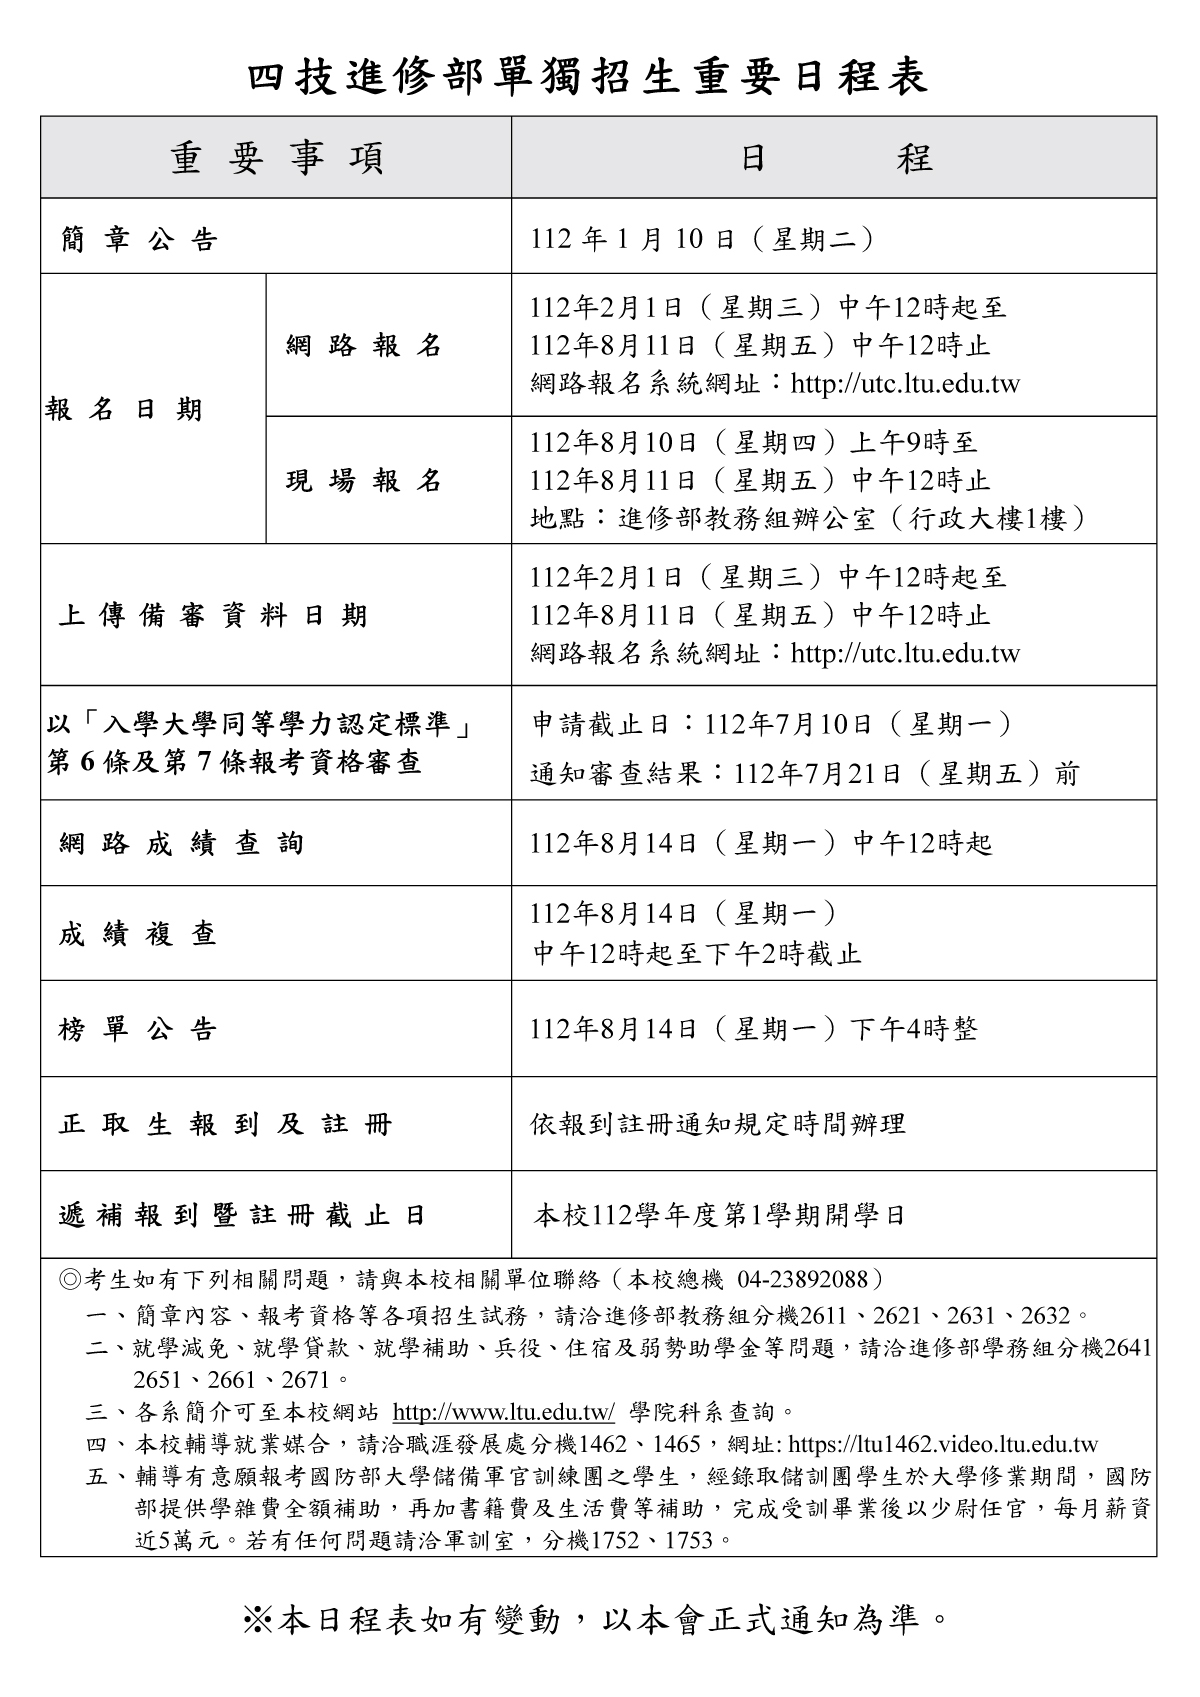 嶺東科技大學112學年度四技進修部單獨招生重要日程表